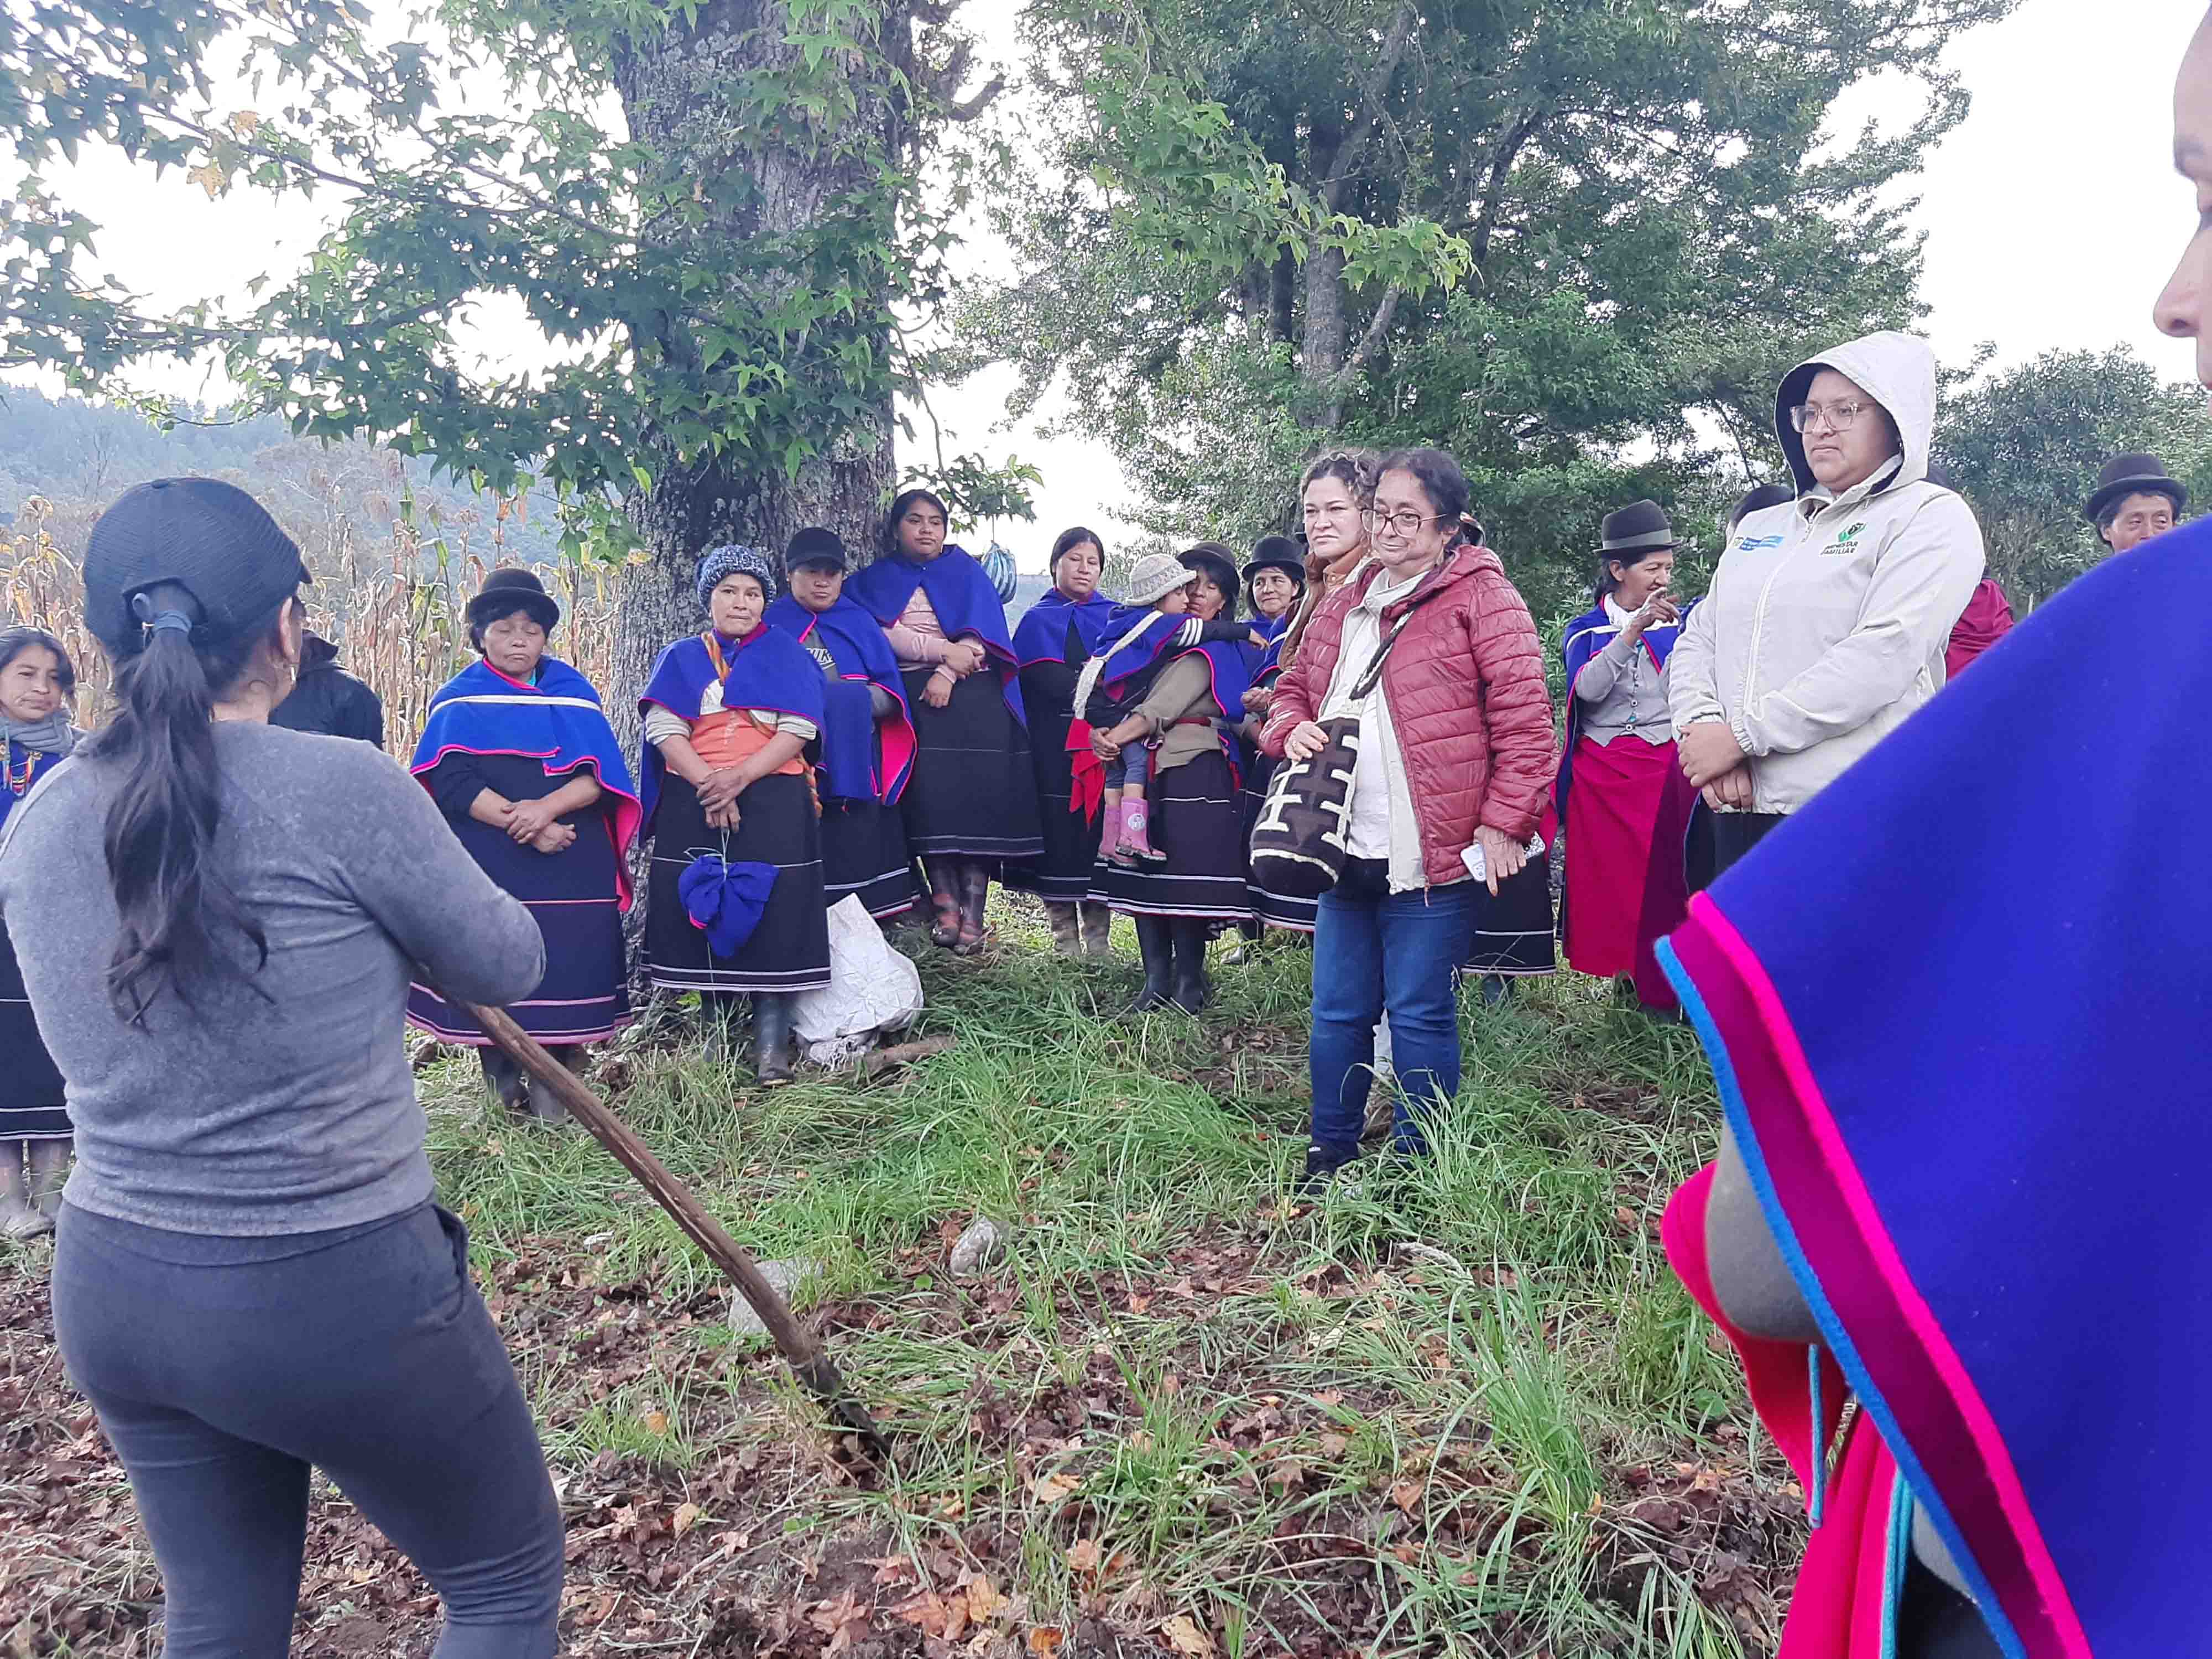 Unidades móviles del ICBF desarrollaron proyectos para el fortalecimiento familiar y comunitario en el Cauca